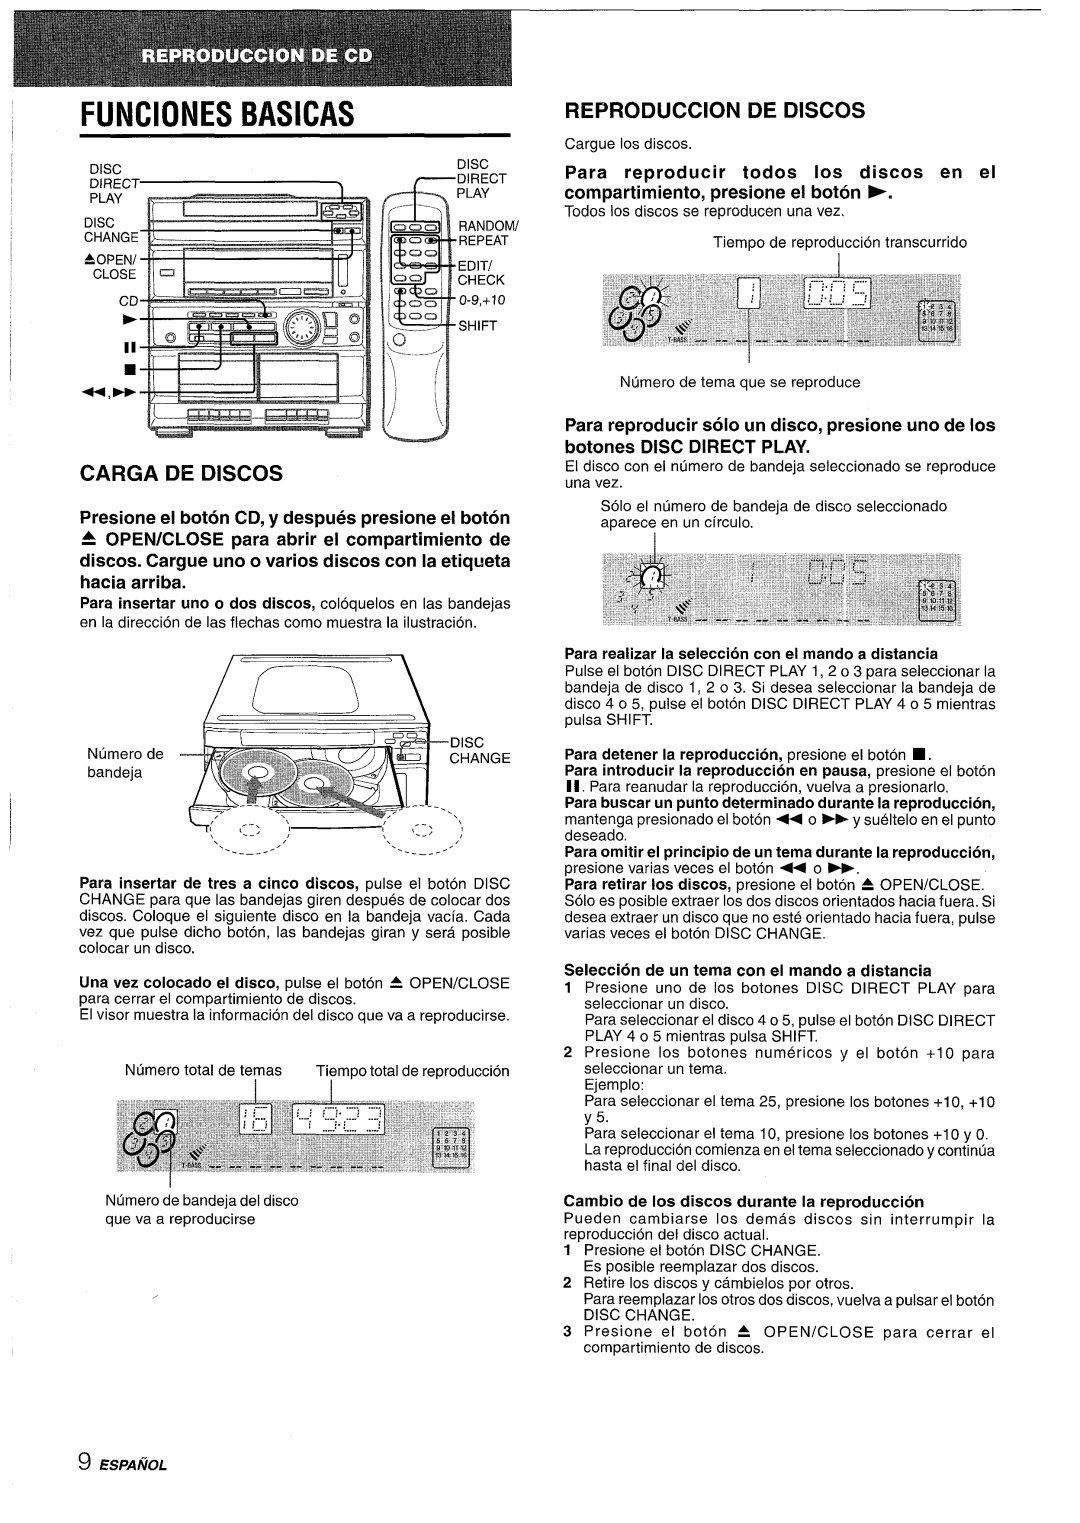 Sony CX-ZR525 manual FUNClONES, Basicas, Carga De Discos, Reproduction De Discos, Para reproducer todos Ios discos en el 